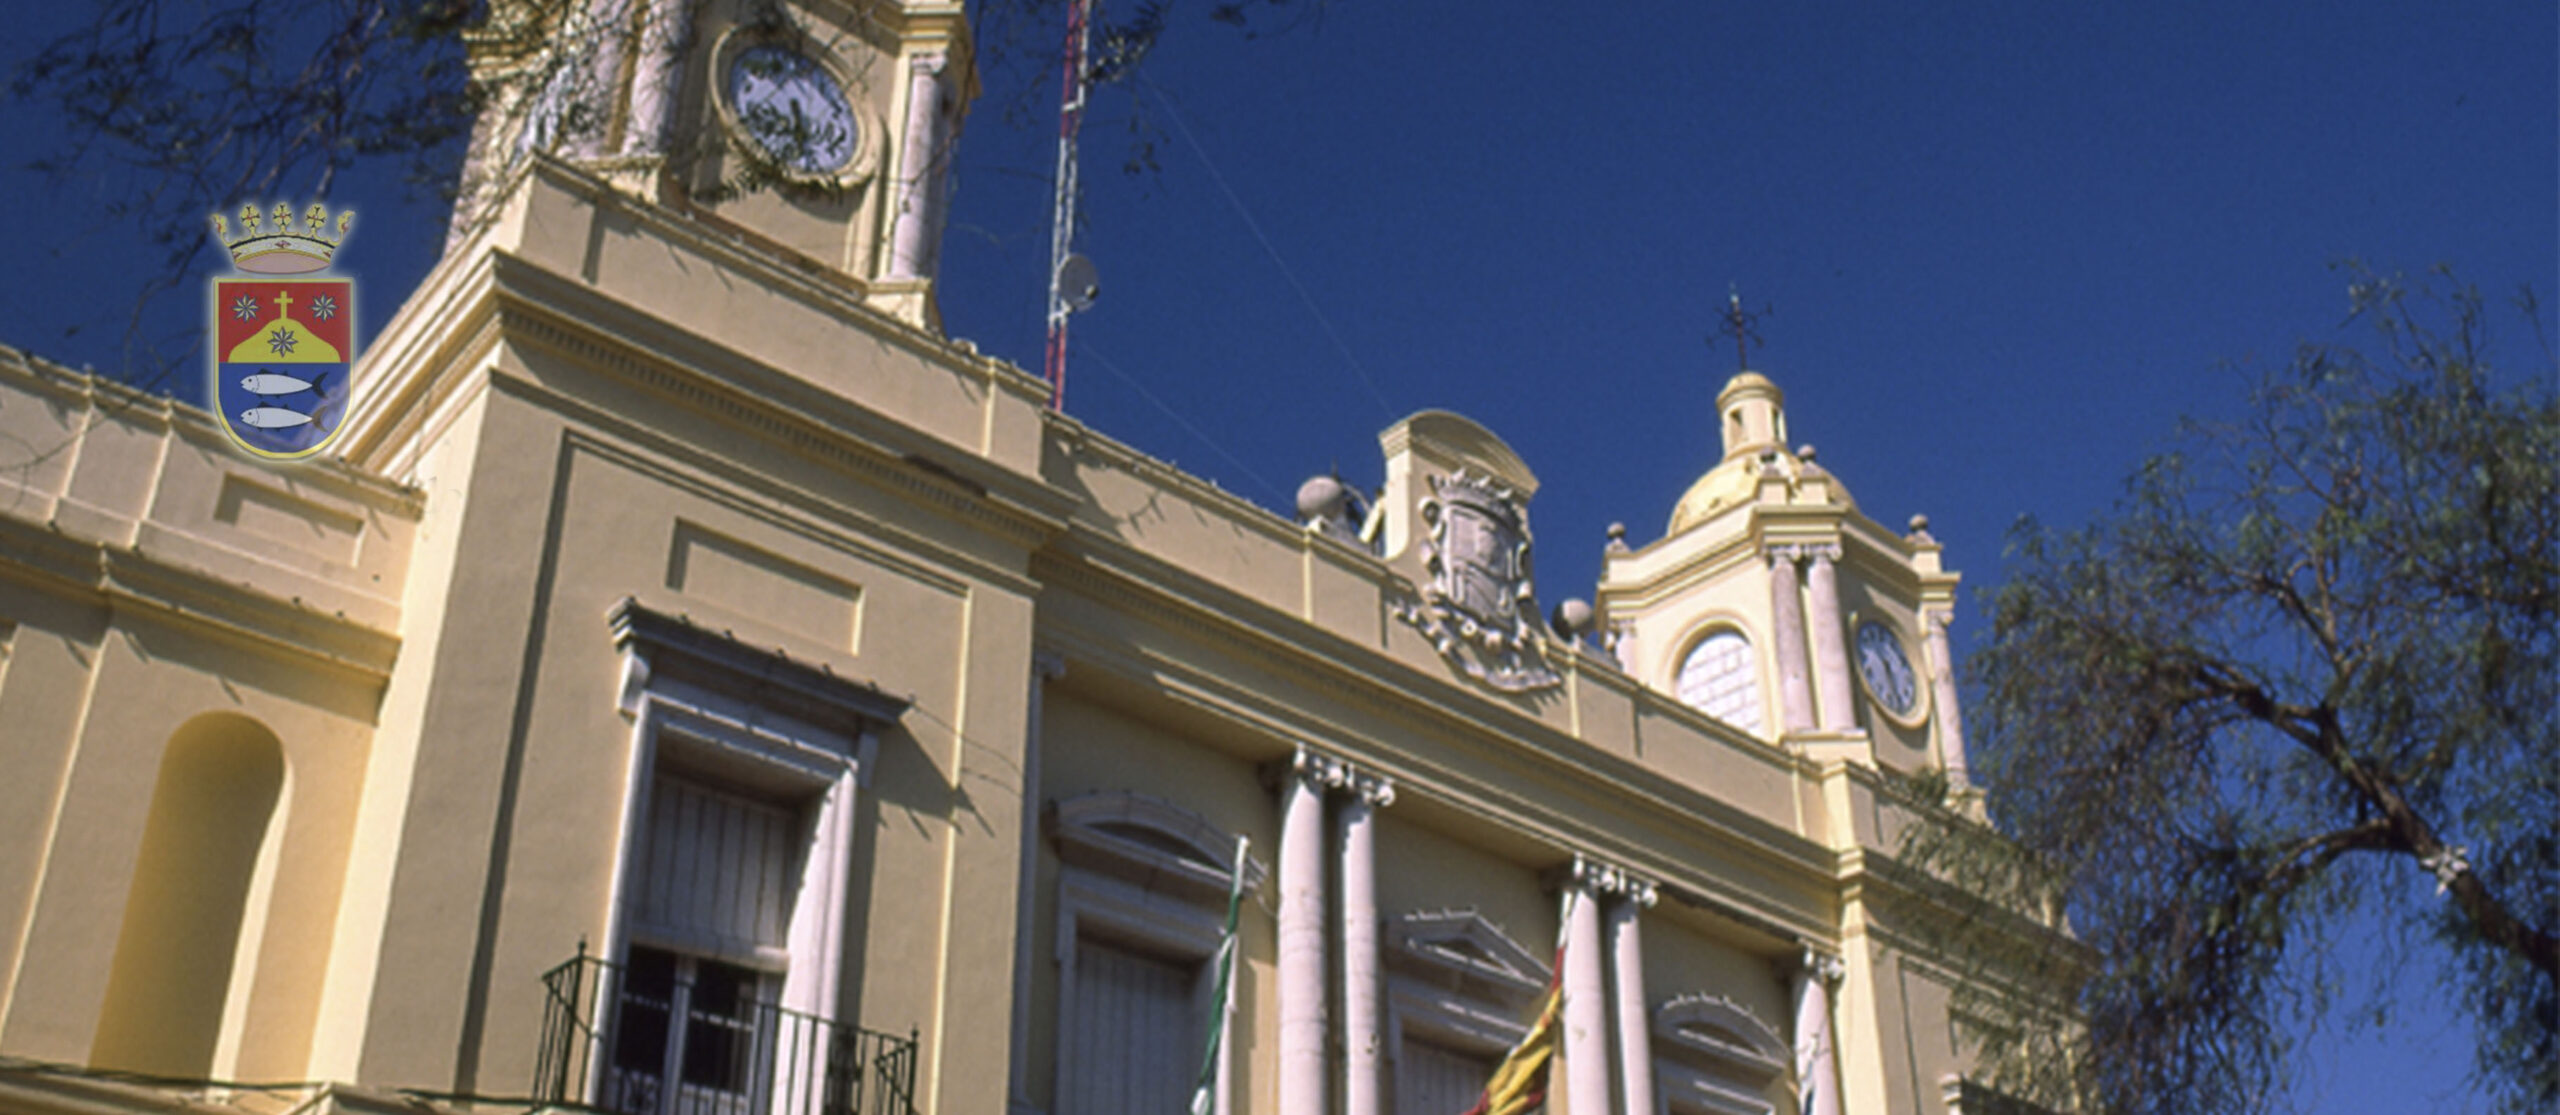 Periodistas ponen al Ayuntamiento de Barbate  como ejemplo de “buena práctica” hacia la profesión